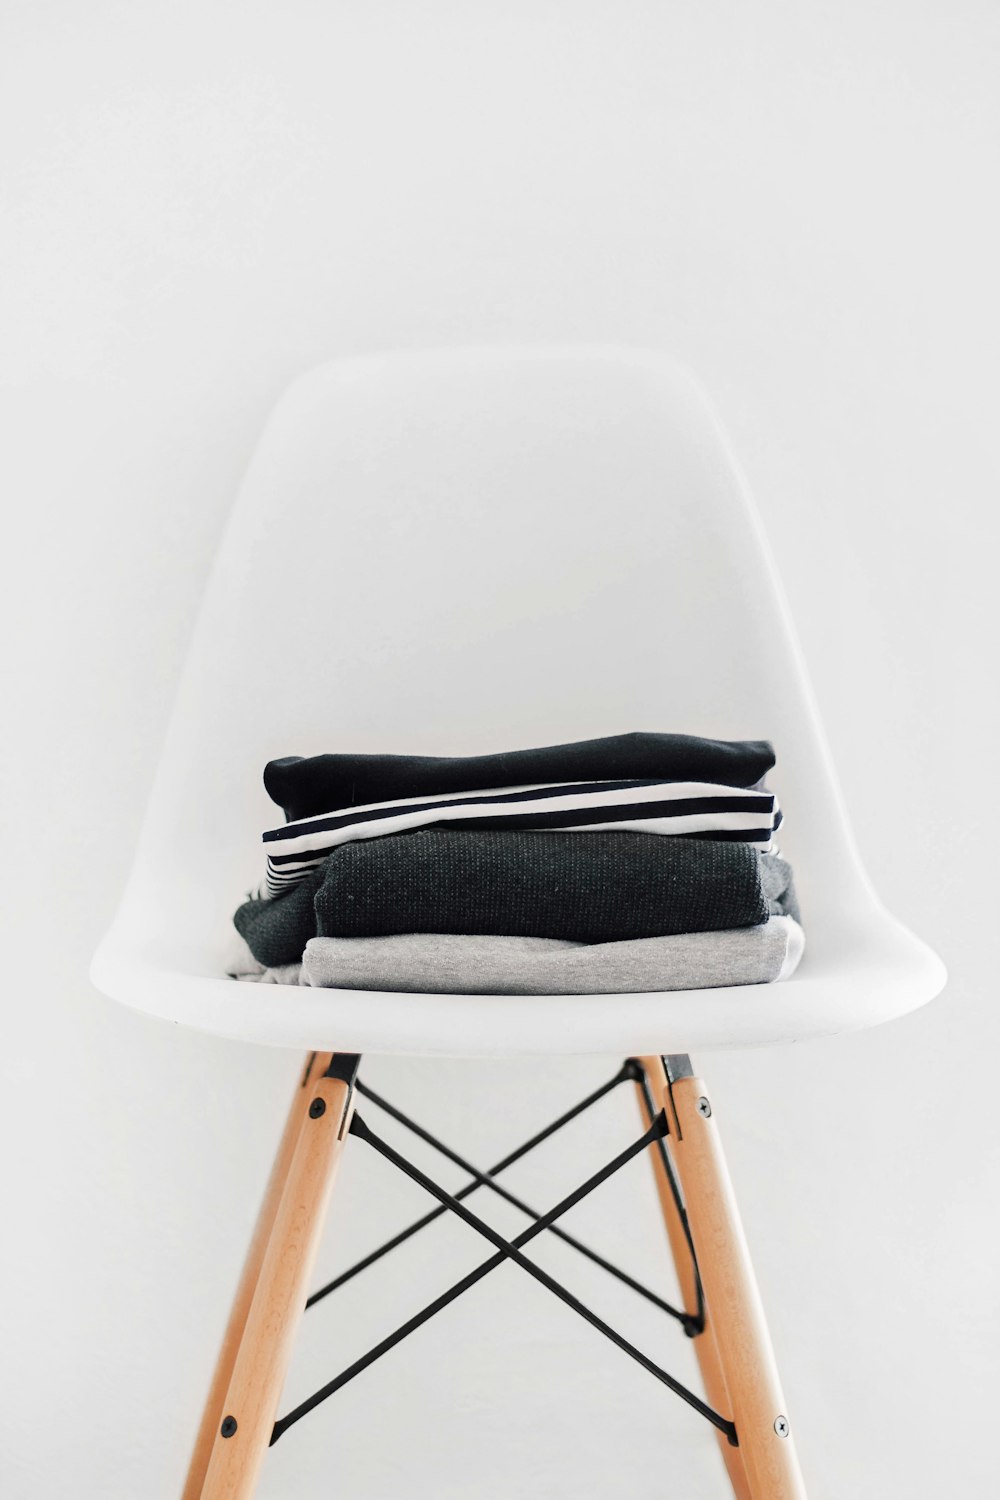 montón de textiles negros, blancos y grises en una silla acolchada blanca con marco marrón